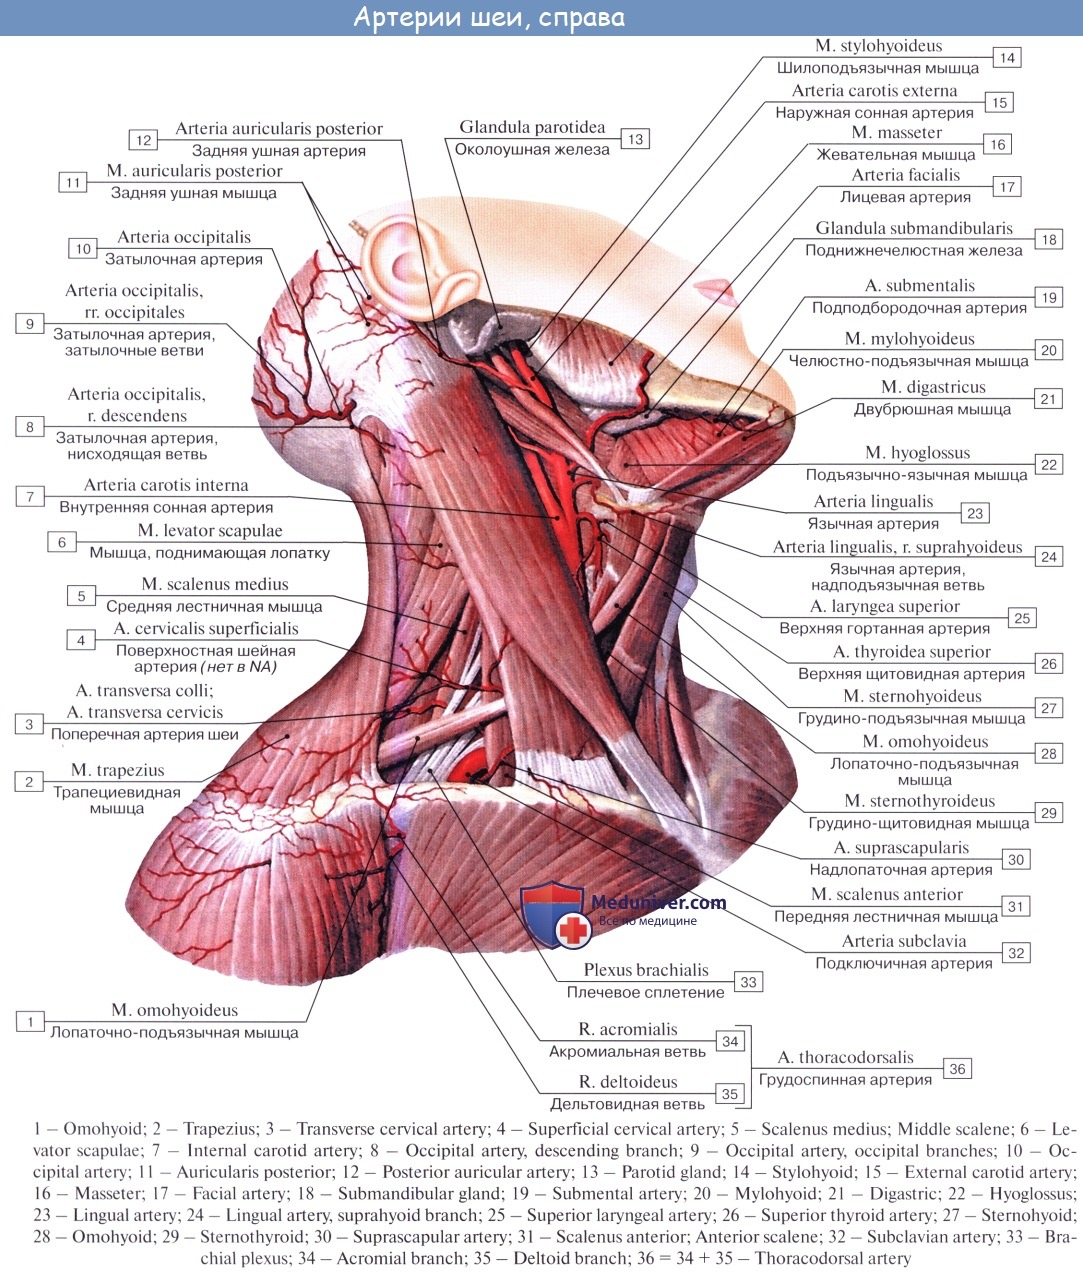 Внутреннее строение шеи. Мышцы шеи анатомия Синельников. Мышцы шеи вид спереди Синельников. Глубокие мышцы шеи сбоку анатомия. Глубокие мышцы шеи анатомия атлас.